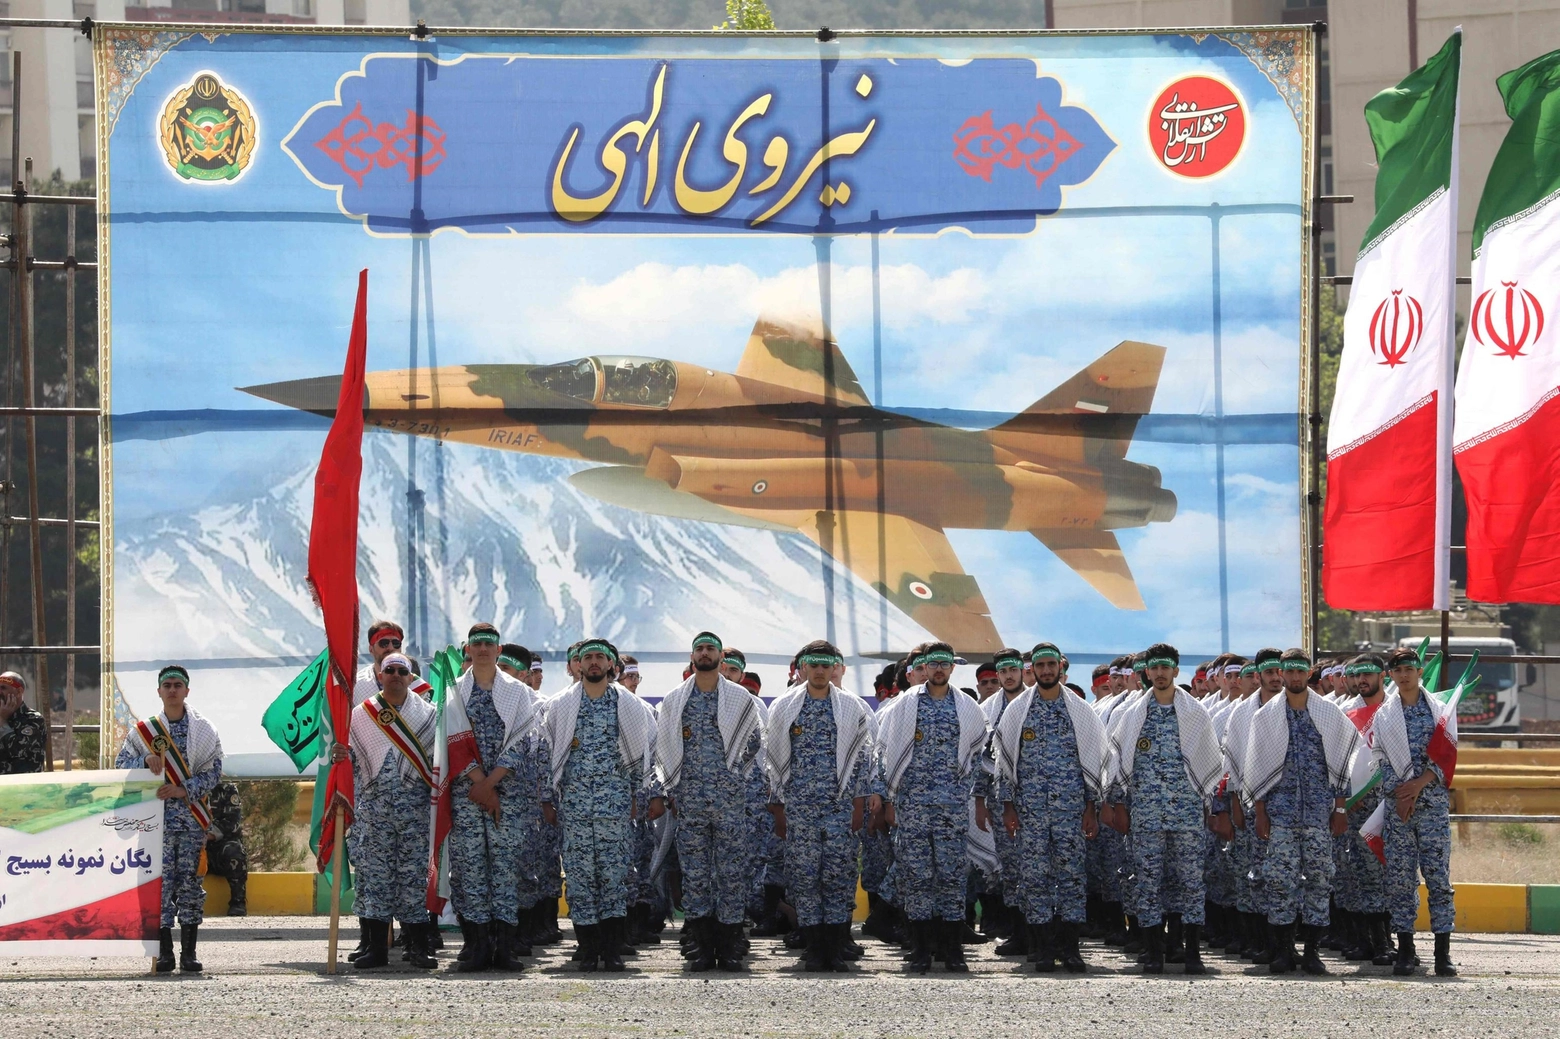 Parata dell'esercito iraniano a Teheran